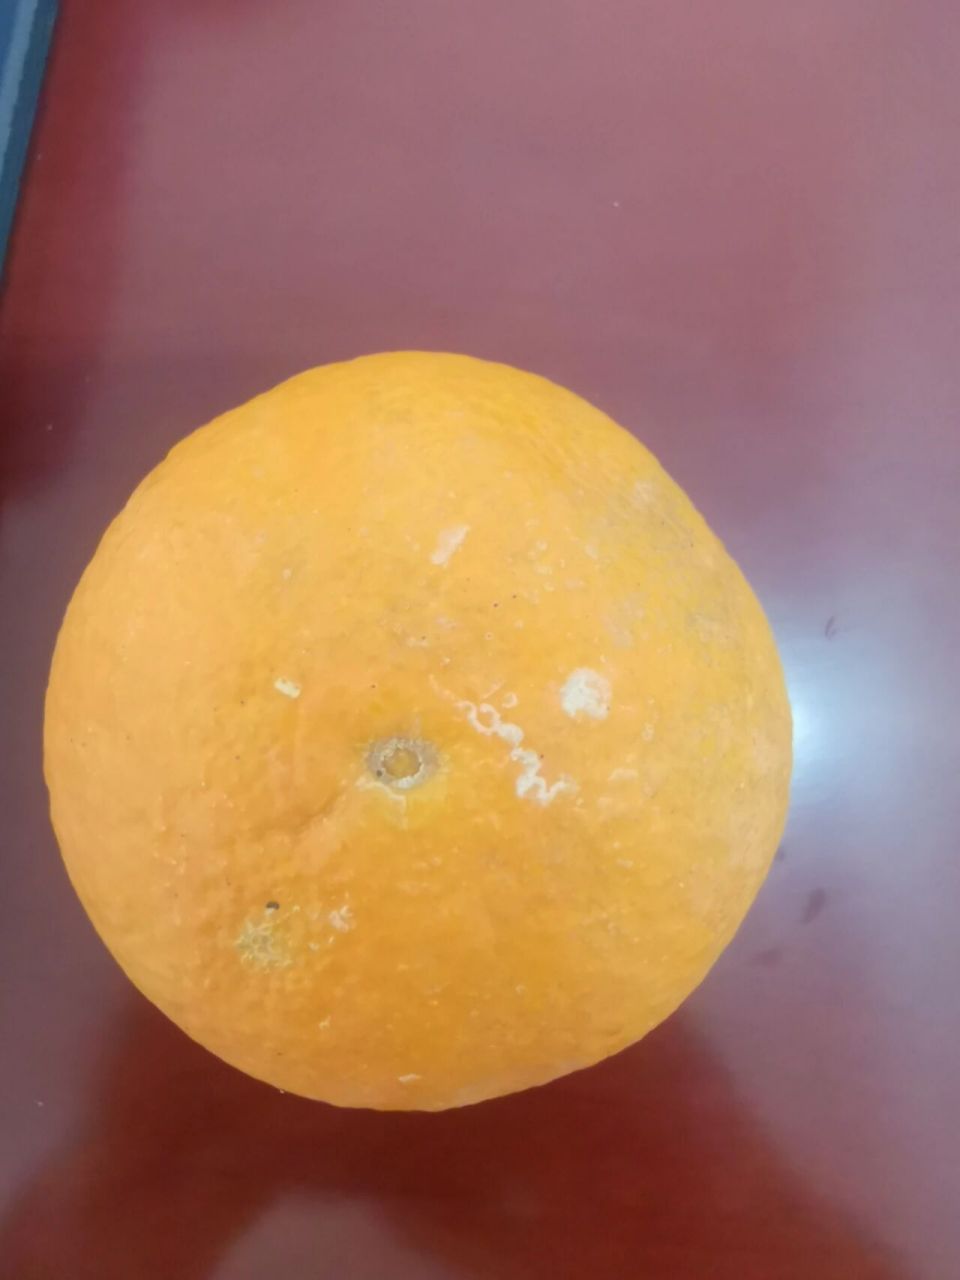 橙子皮上的白点是发霉导致的吗?